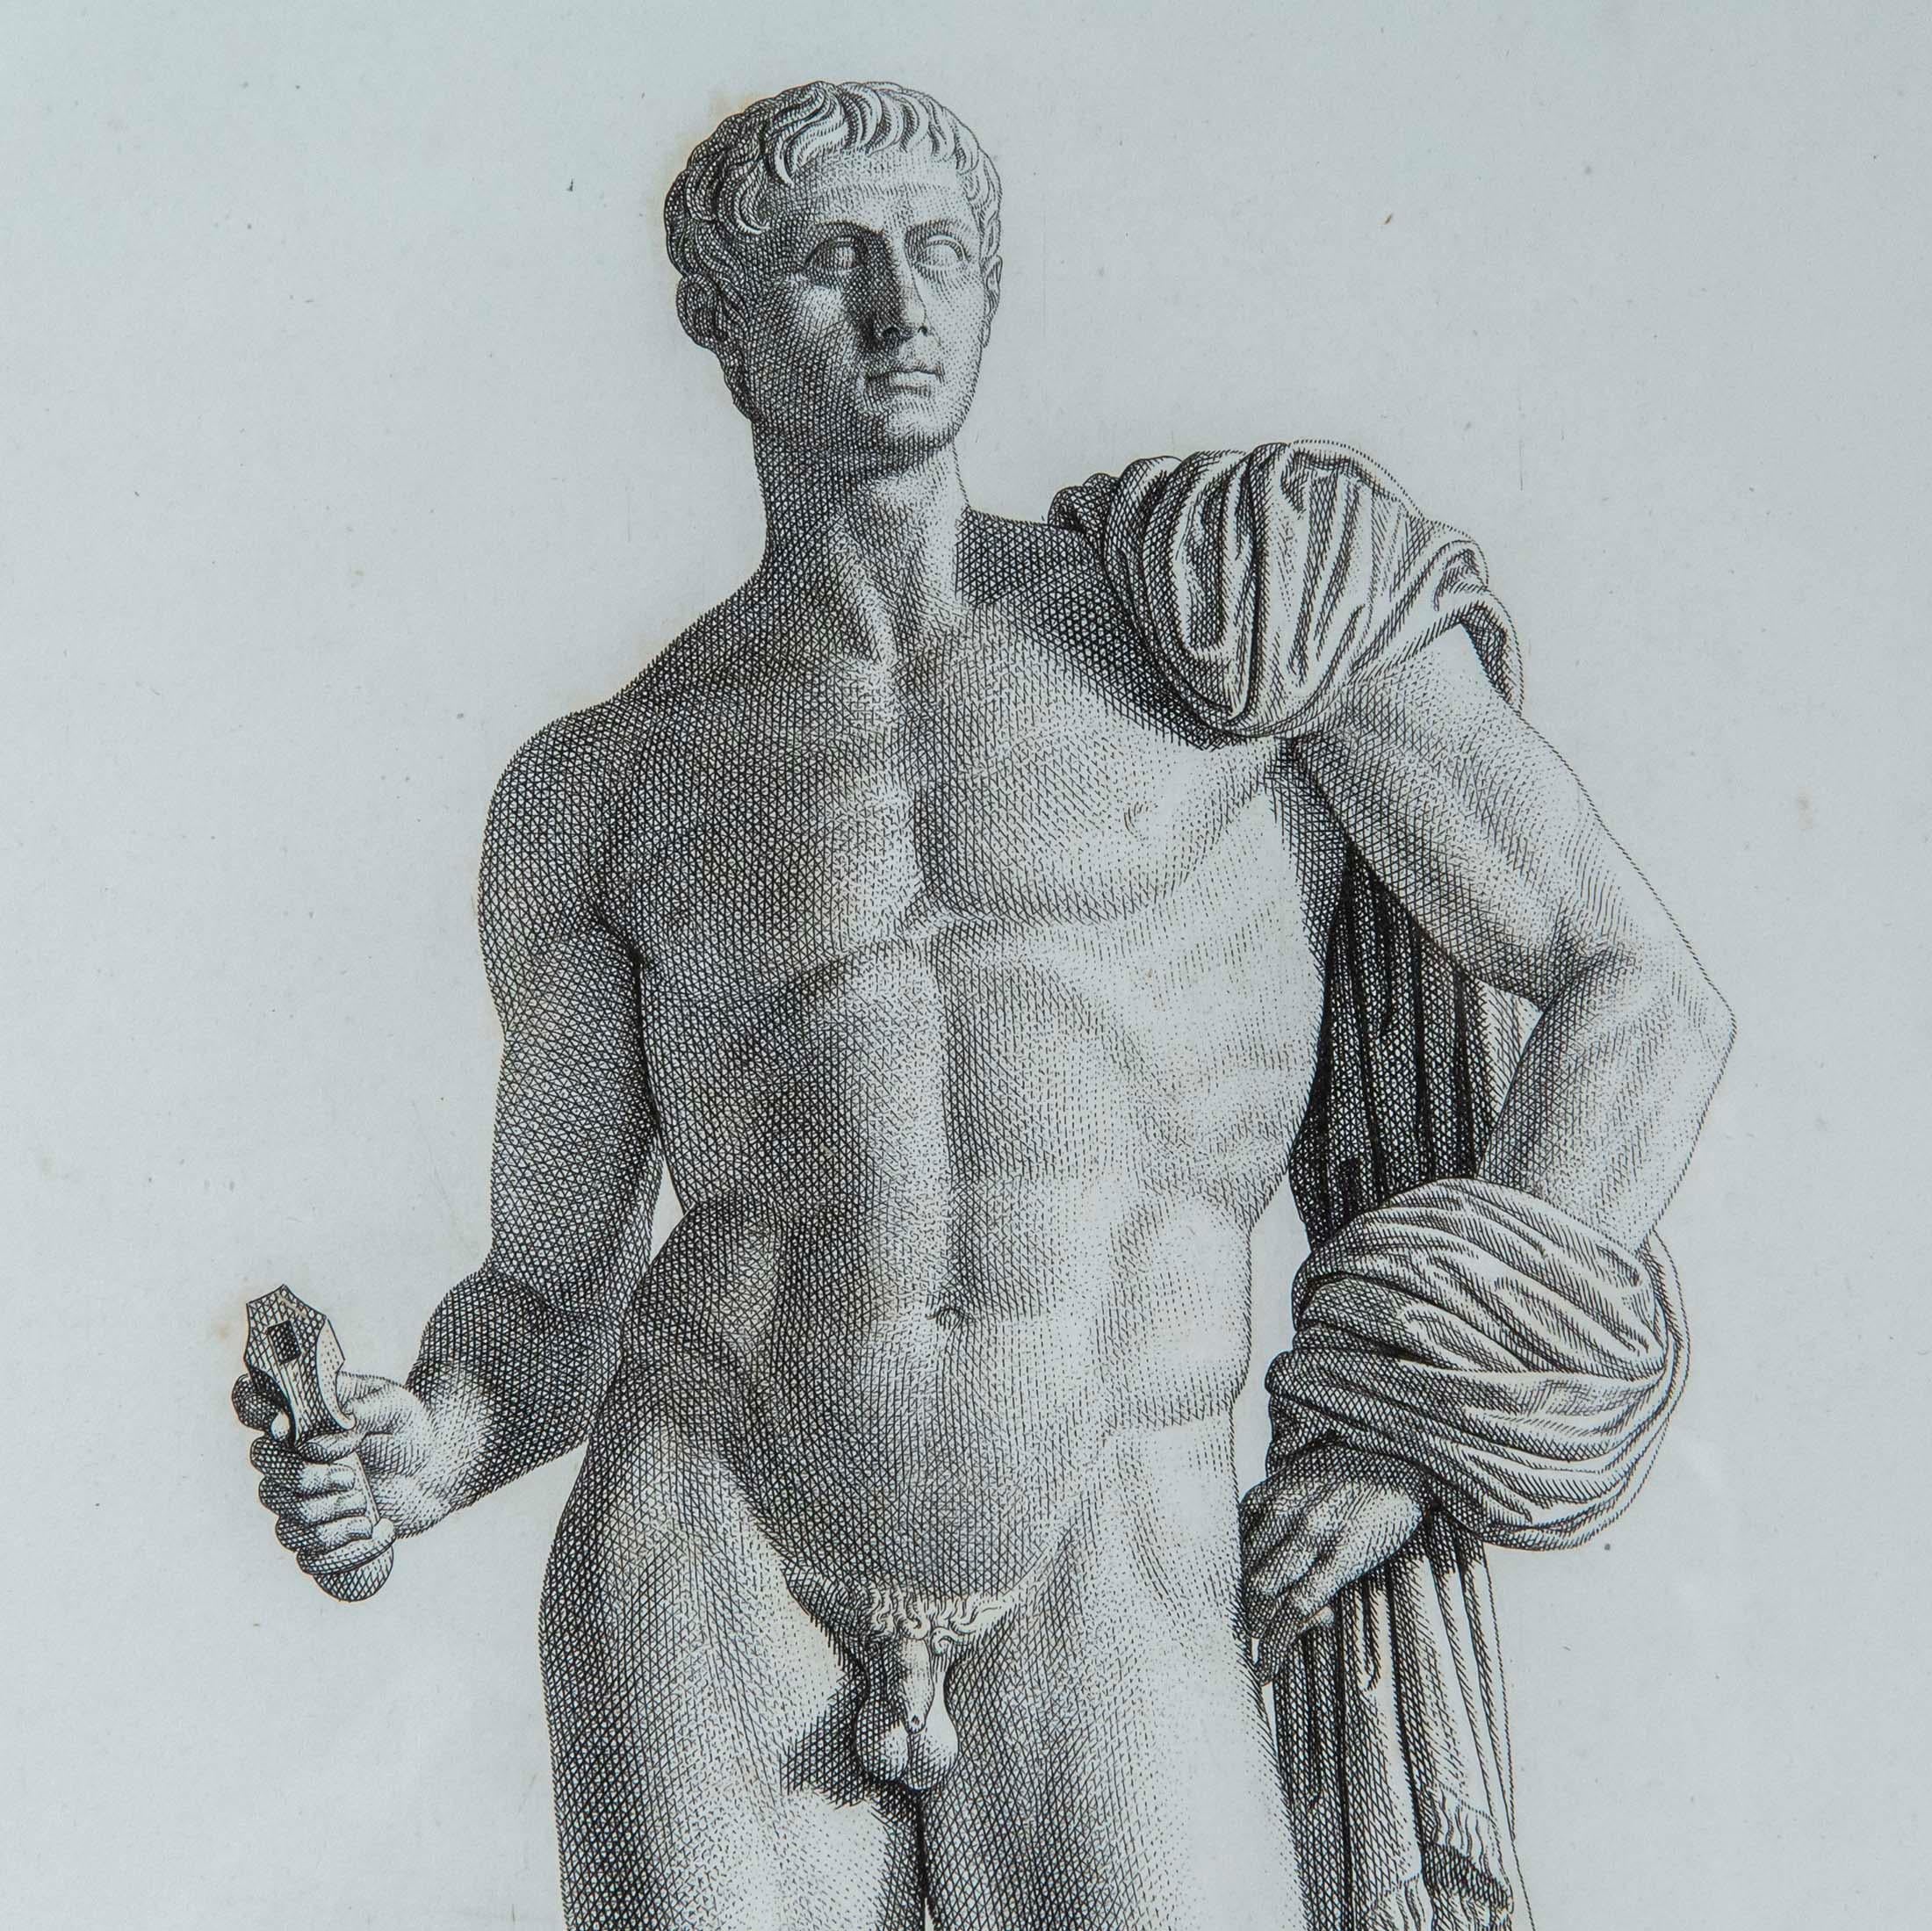 Ein Paar exquisiter und seltener Radierungen antiker Skulpturen von Pierre Bouillon (1776-1831), aus seinem Buch Musée des antiques, das zwischen 1811 und 1827 in Paris veröffentlicht wurde. Die beiden Tafeln mit den Titeln Germanicus und